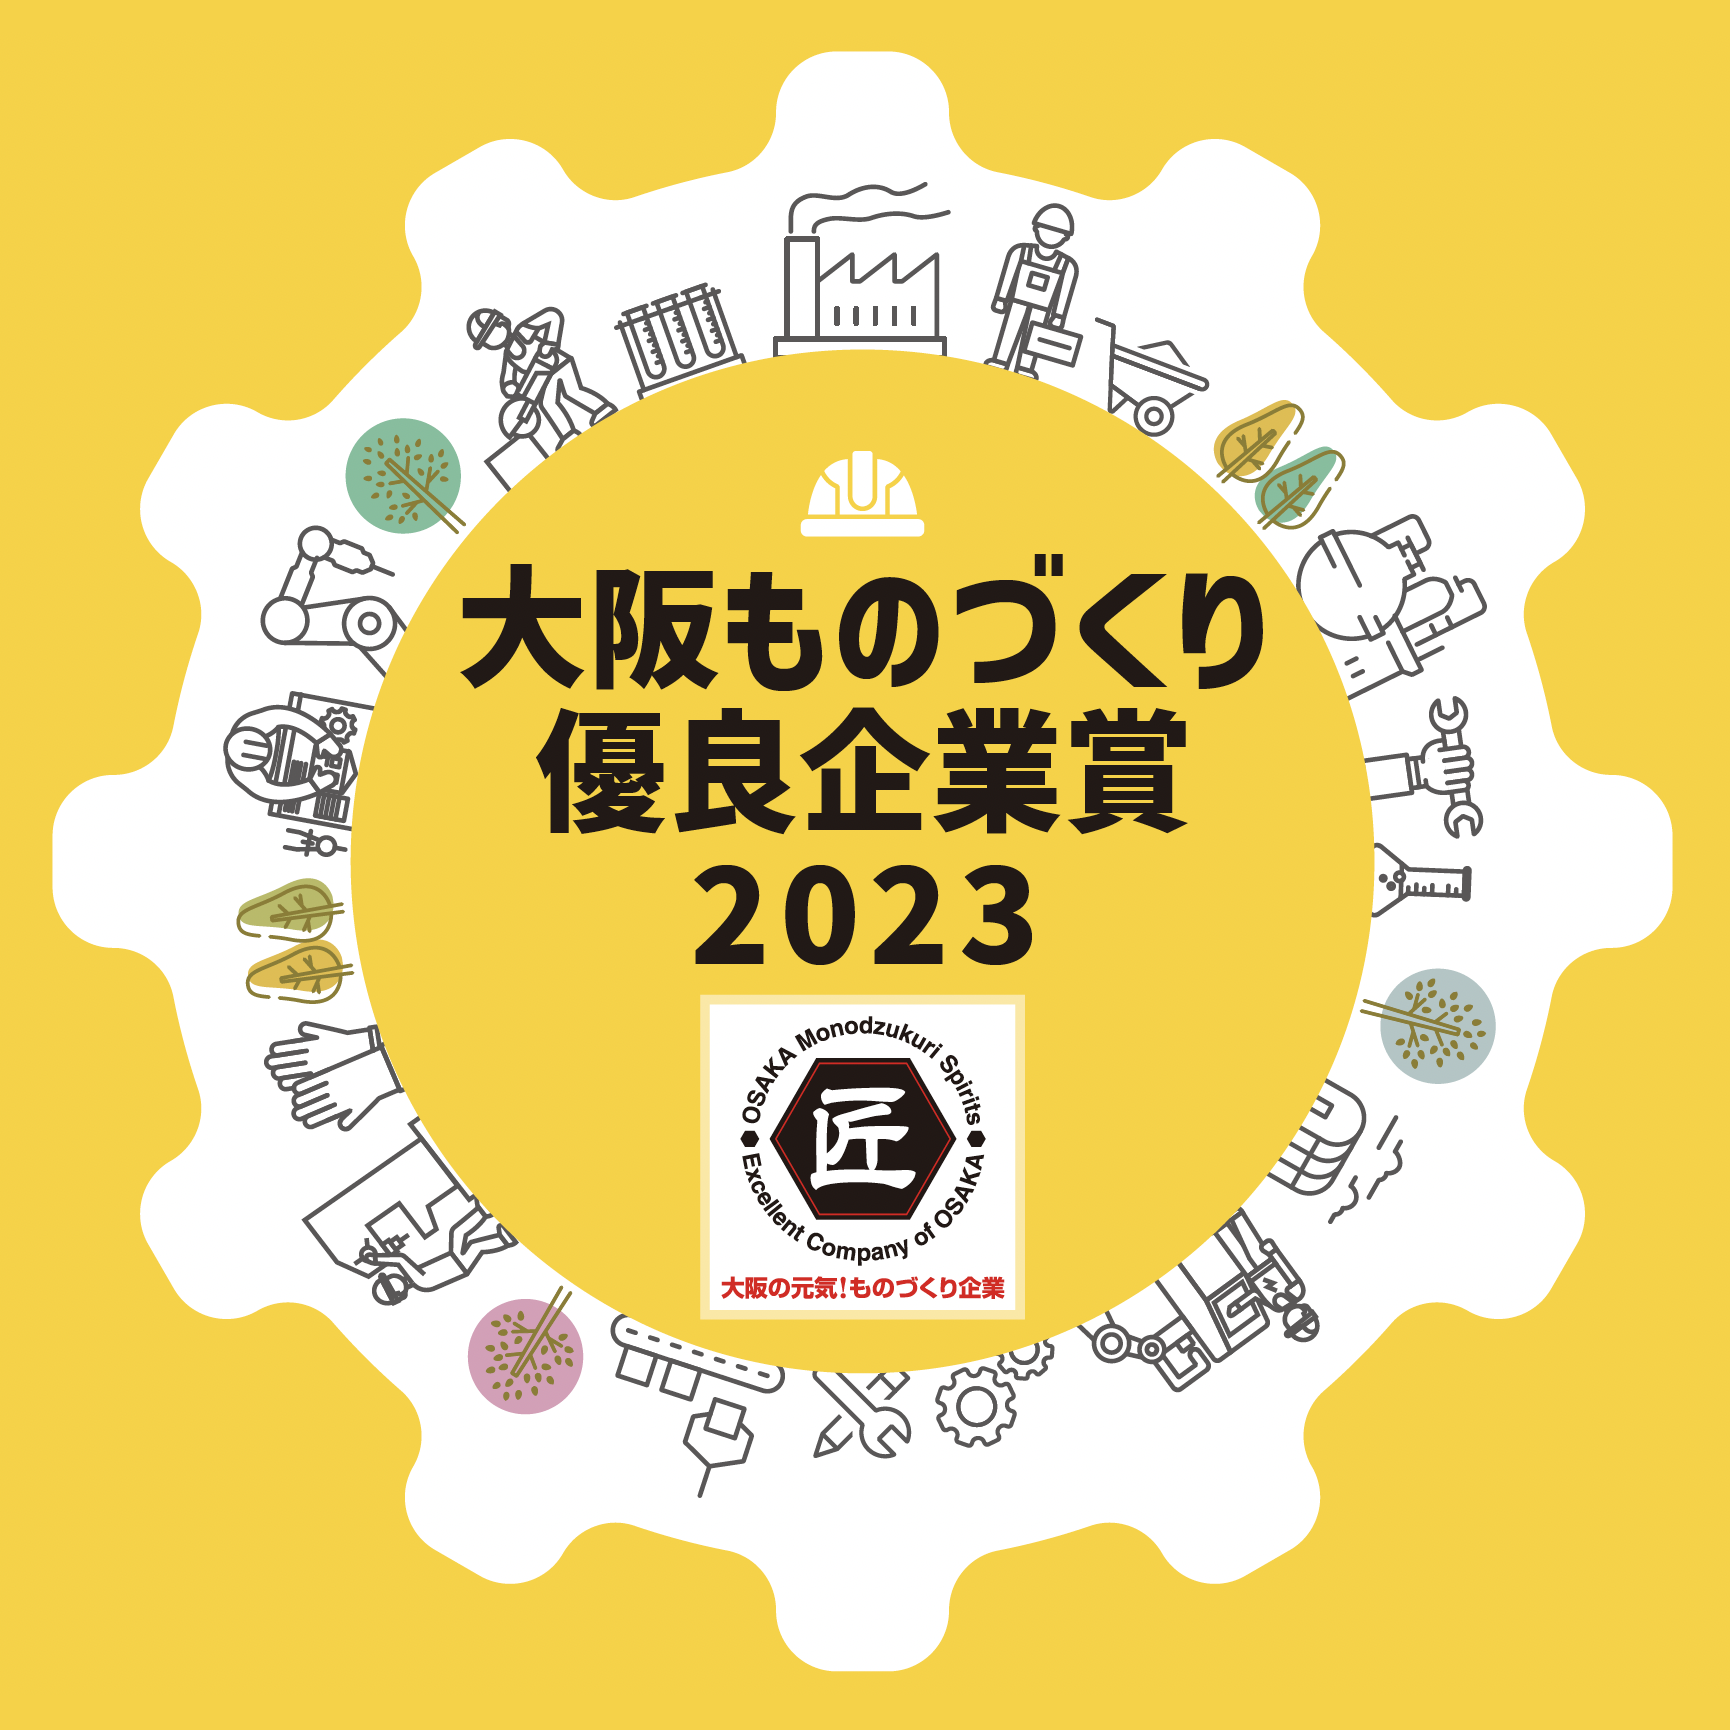 「大阪ものづくり優良企業賞2023」募集のご案内